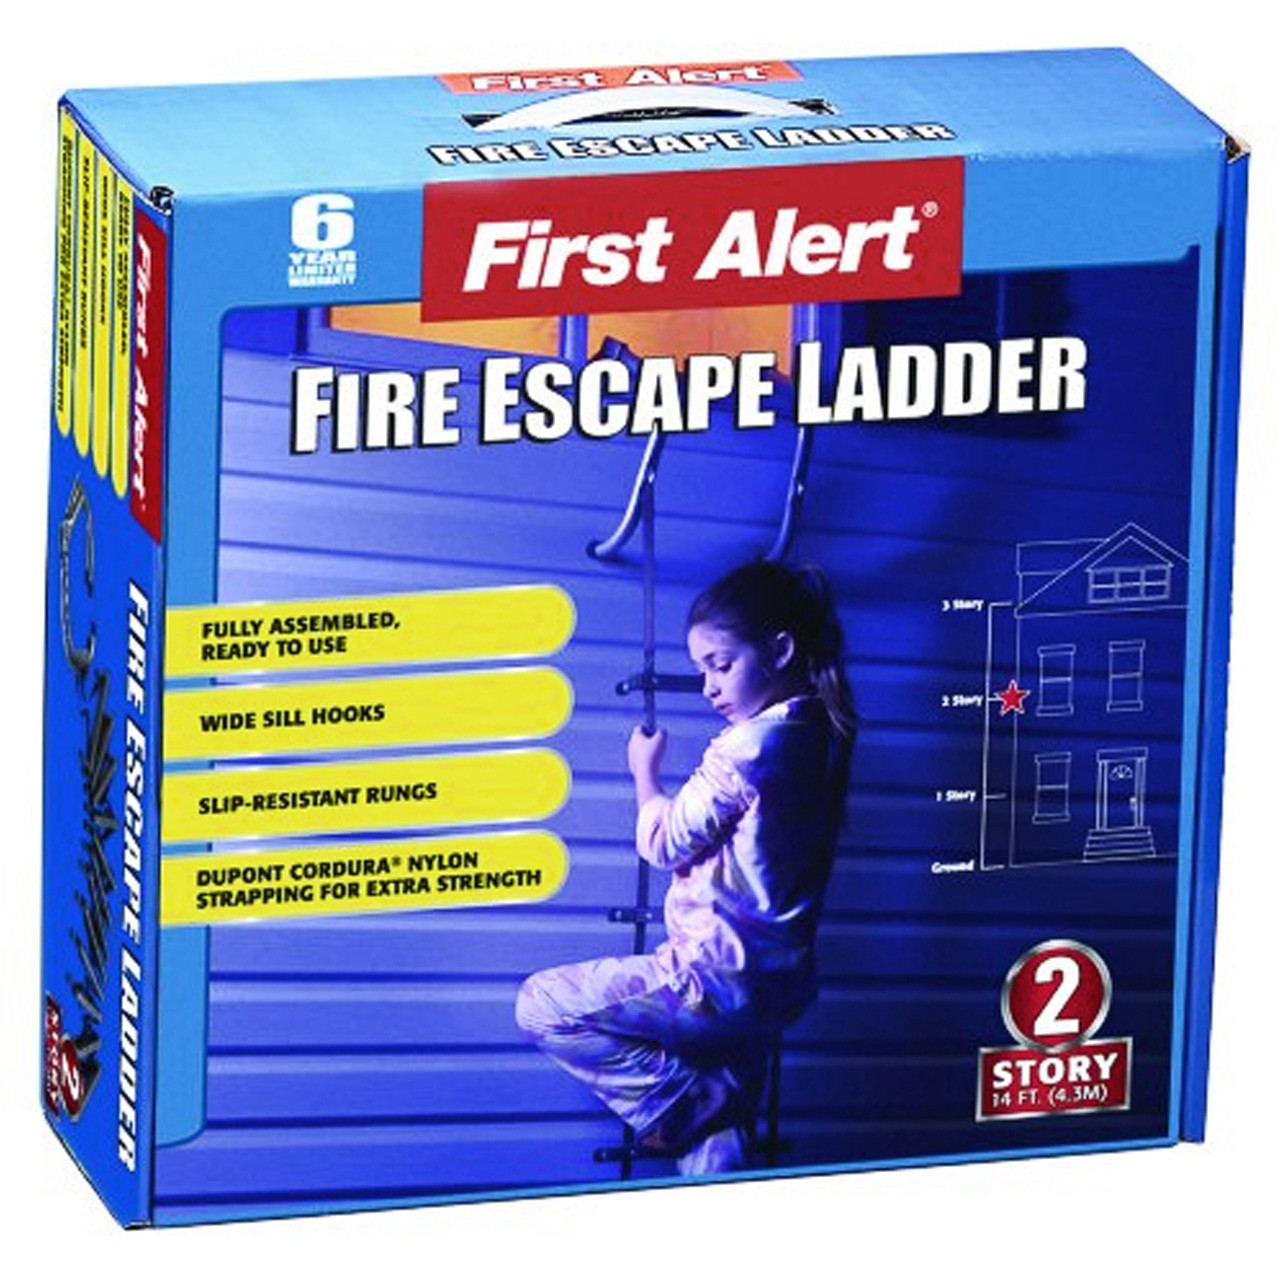 First Alert Fire Escape Ladder